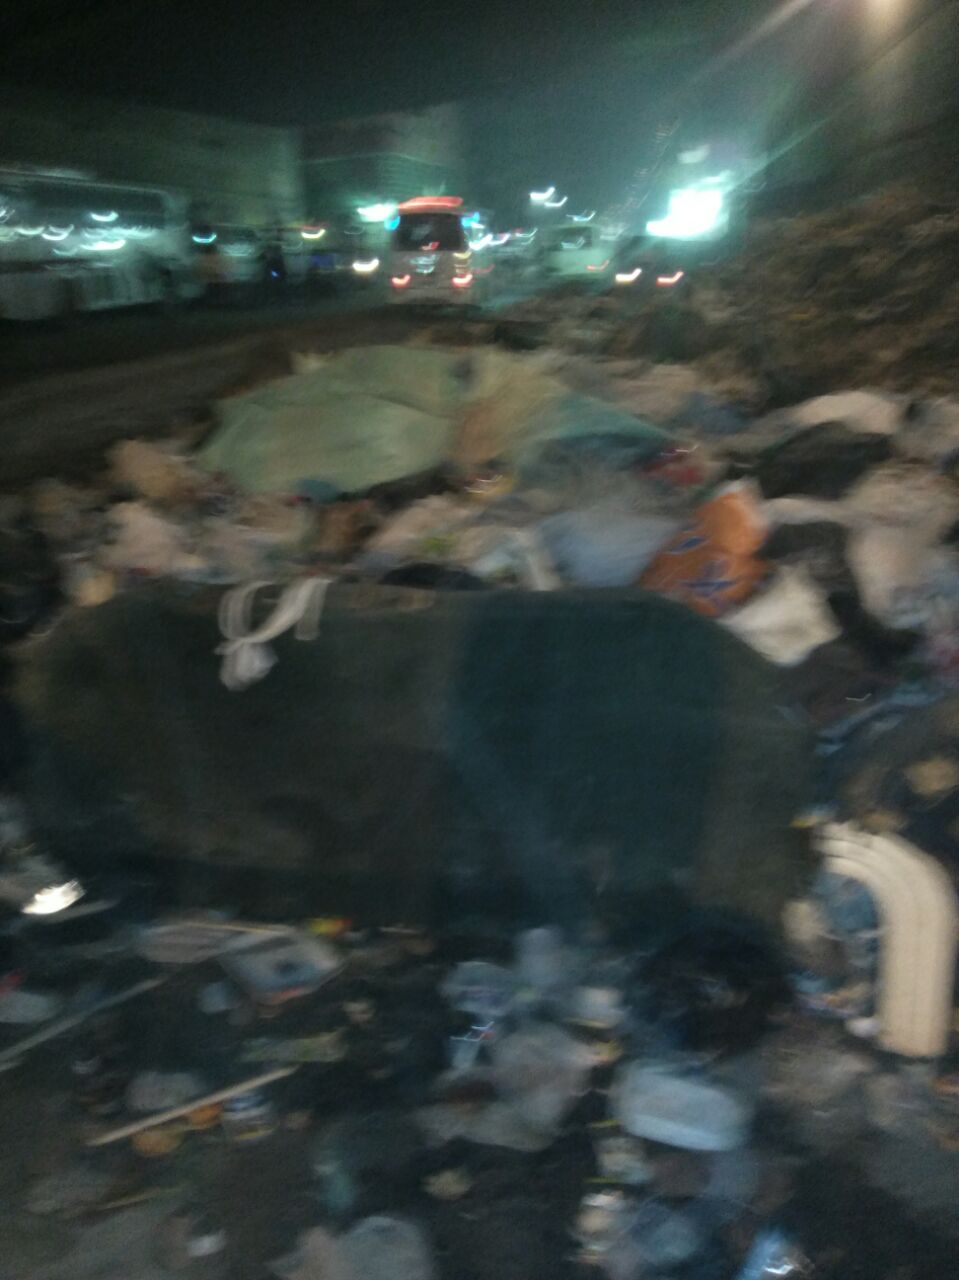  انتشار القمامة بشارع ناهيا 